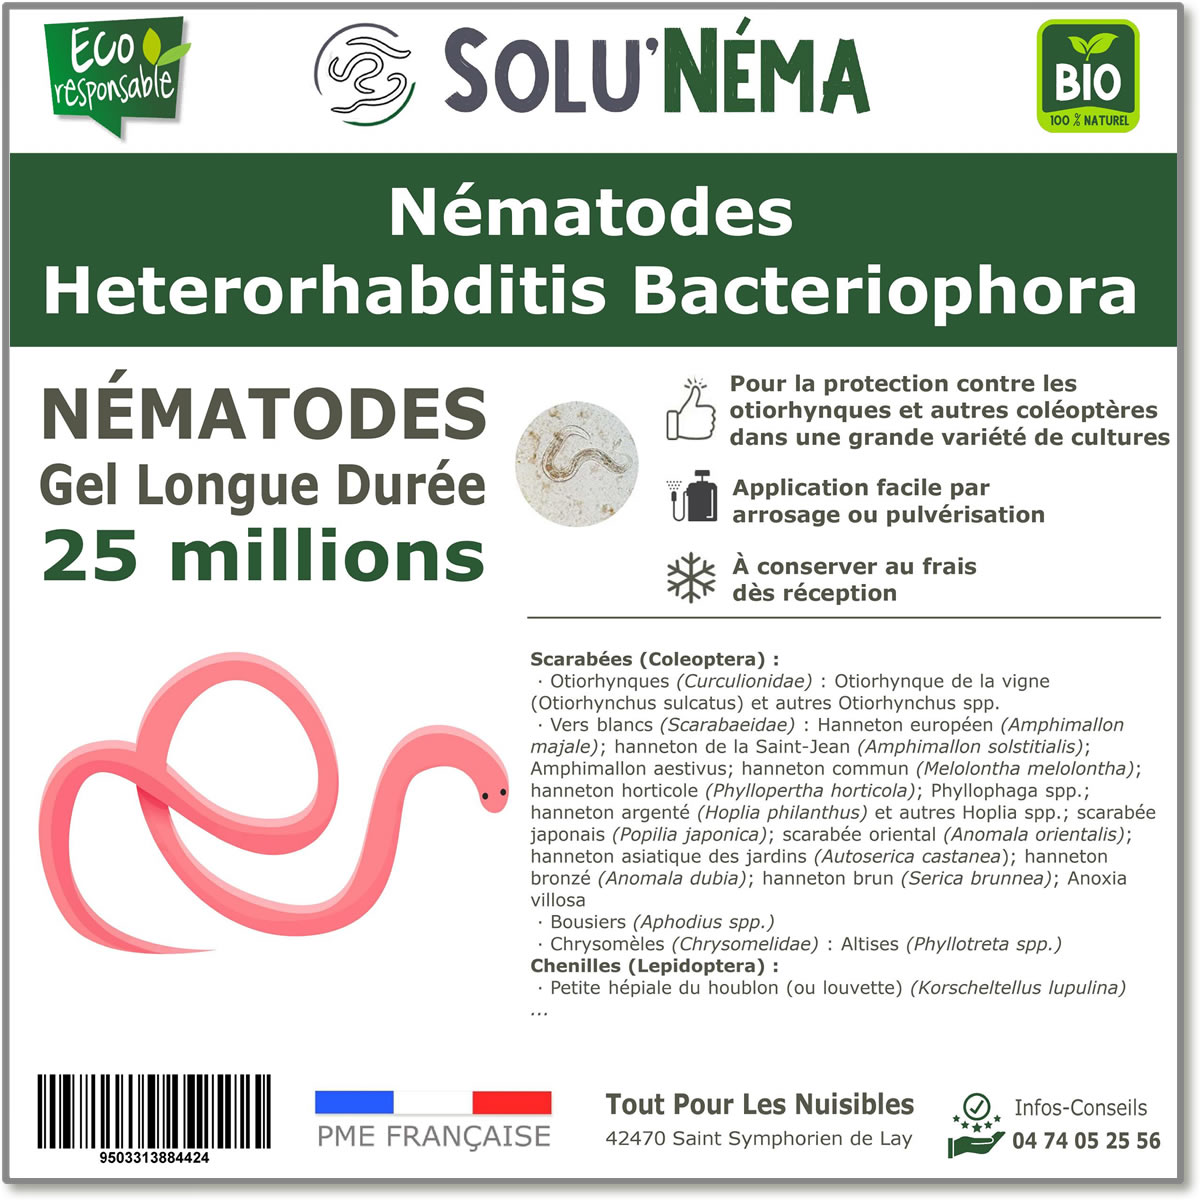 25 Millions de nématodes Heterorhabditis Bacteriophora (HB)